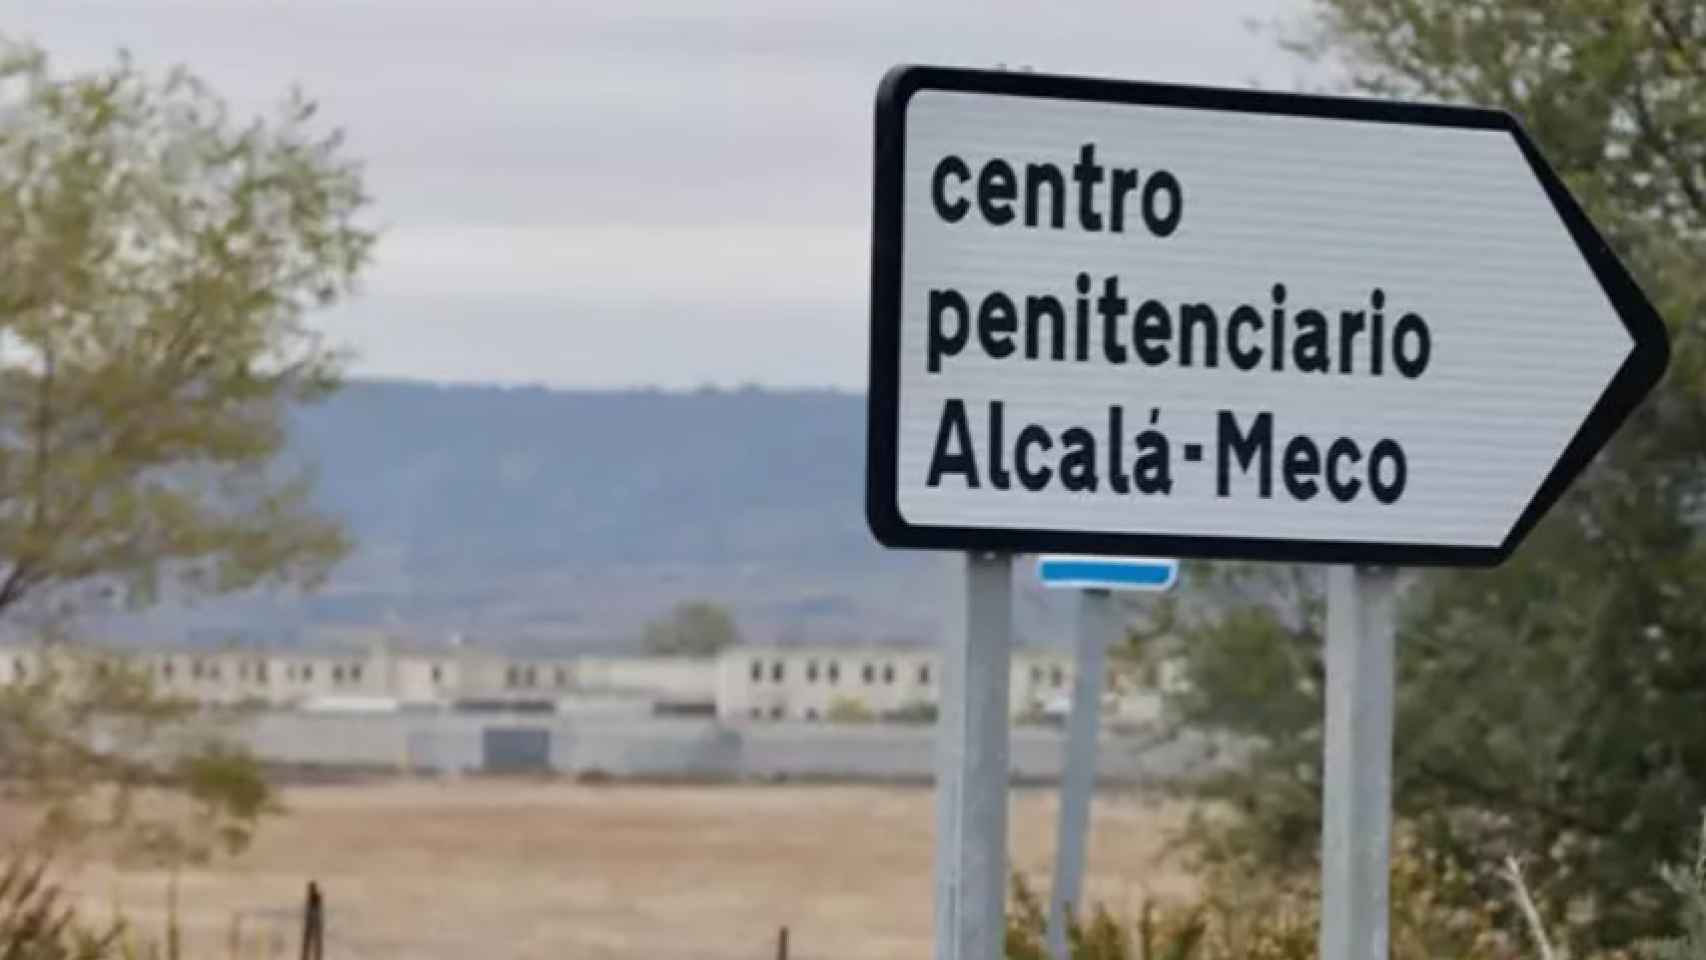 Señal que indica el camino a la prisión de Alcalá-Meco.